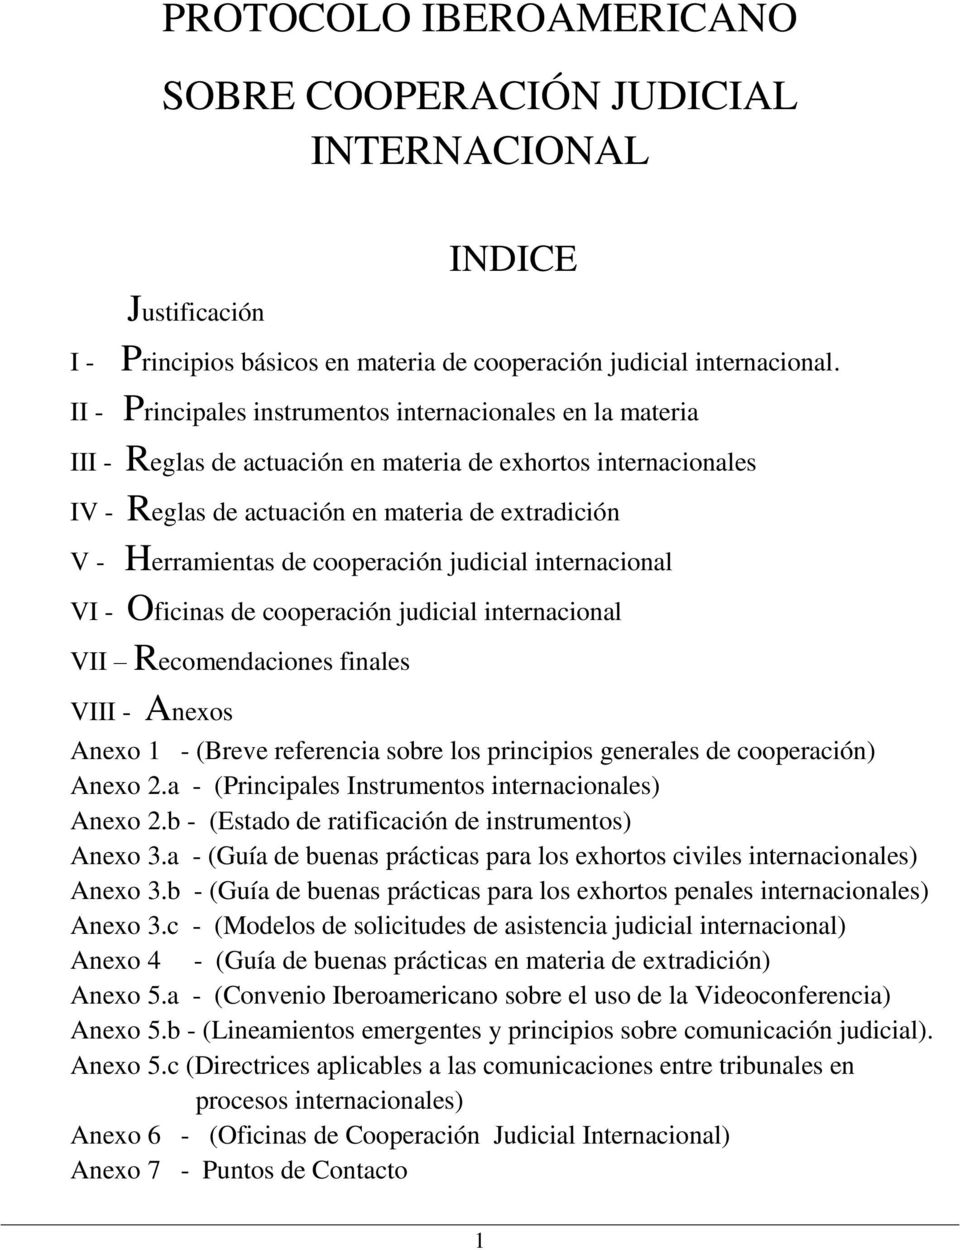 cooperación judicial internacional VI - Oficinas de cooperación judicial internacional VII Recomendaciones finales VIII - Anexos Anexo 1 - (Breve referencia sobre los principios generales de